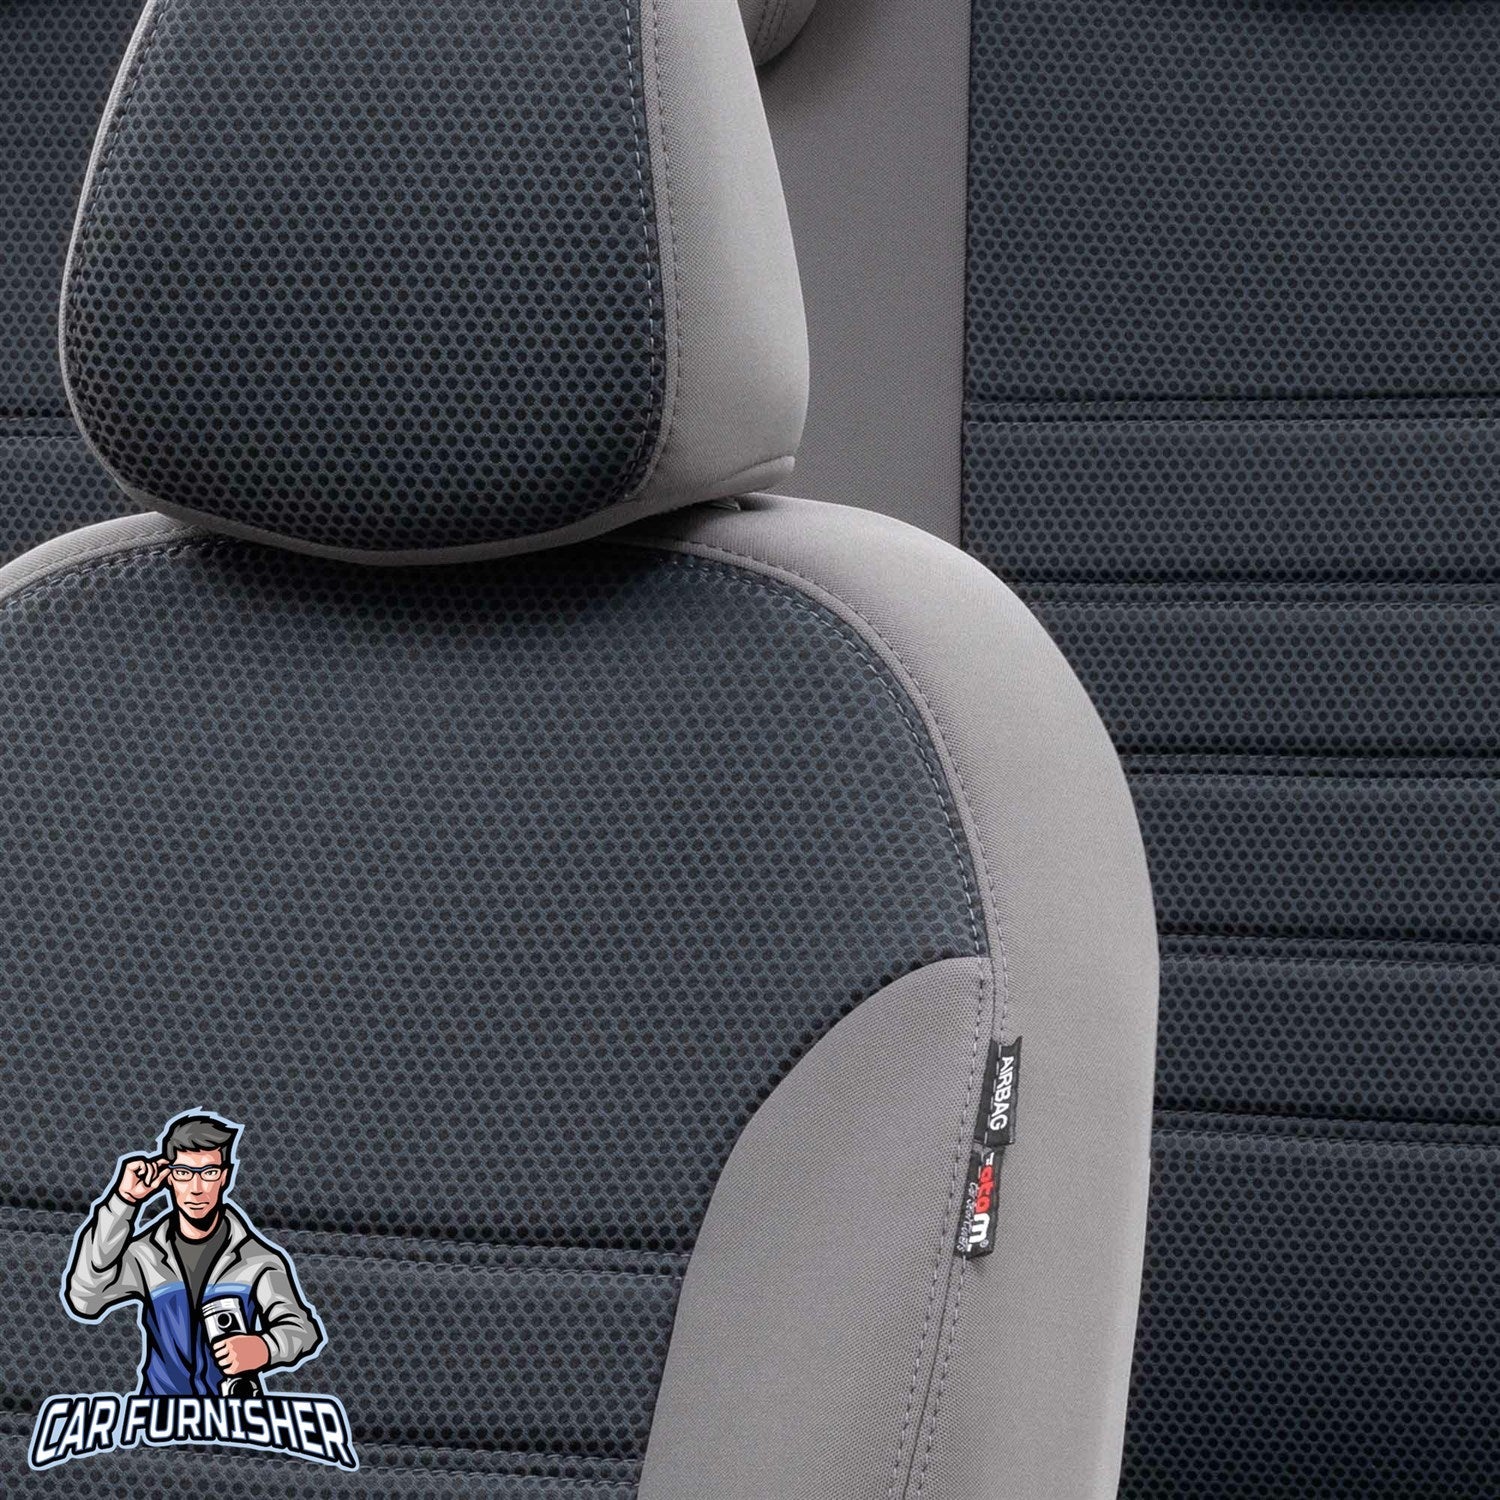 Bmw 5 Series Car Seat Cover 1996-2023 E39/E60/F10/G30 Original Smoked Full Set (5 Seats + Handrest) Fabric